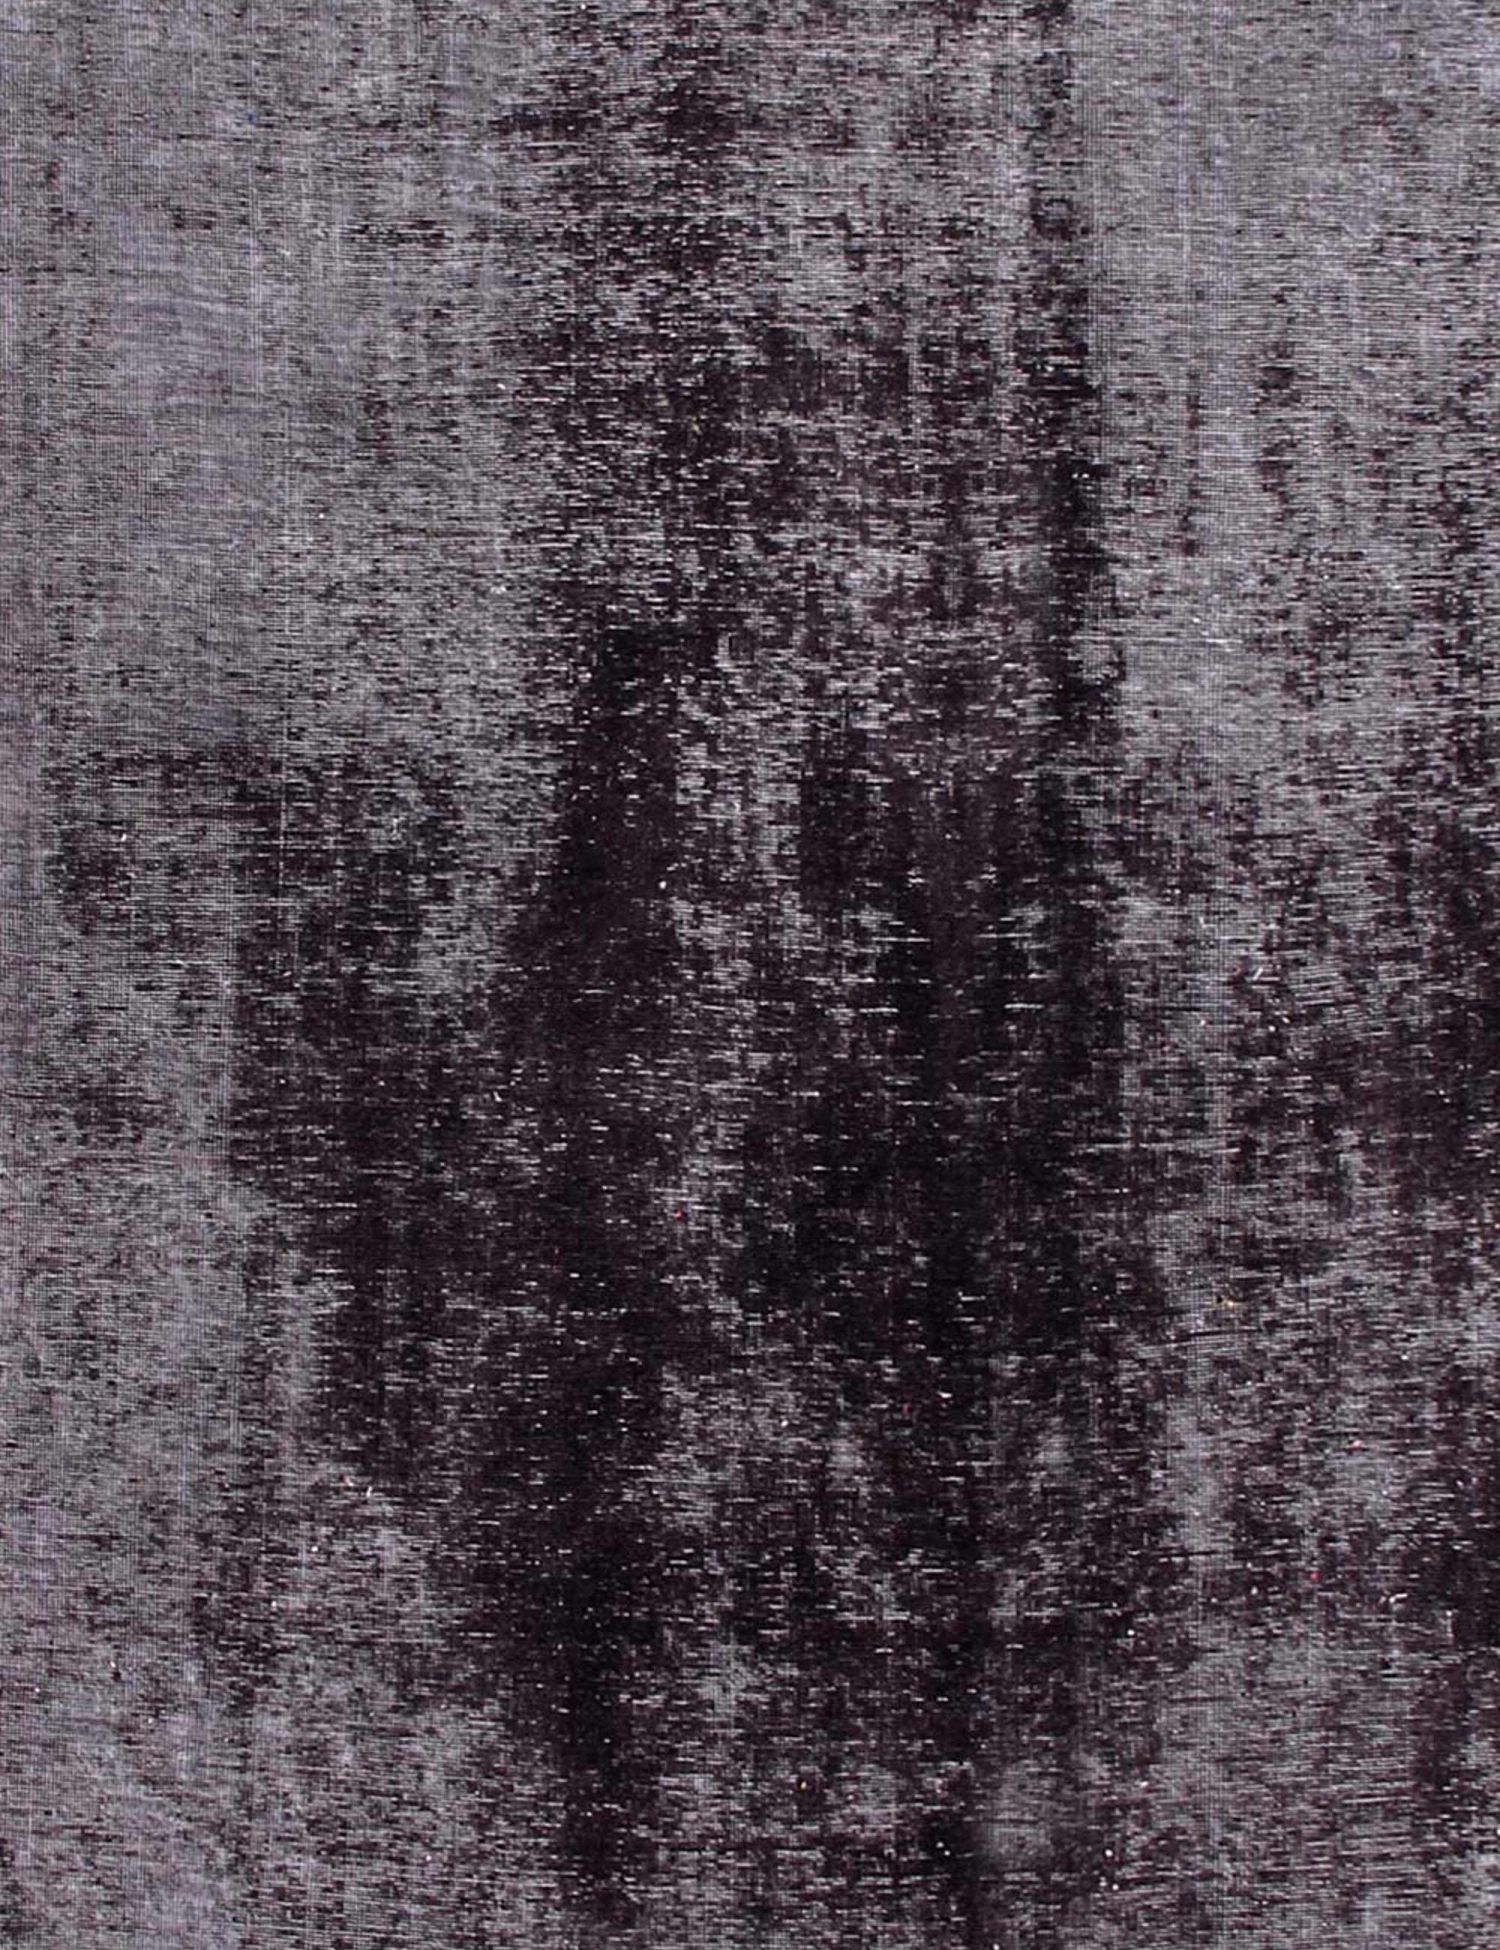 Persian Vintage Carpet  black <br/>372 x 295 cm